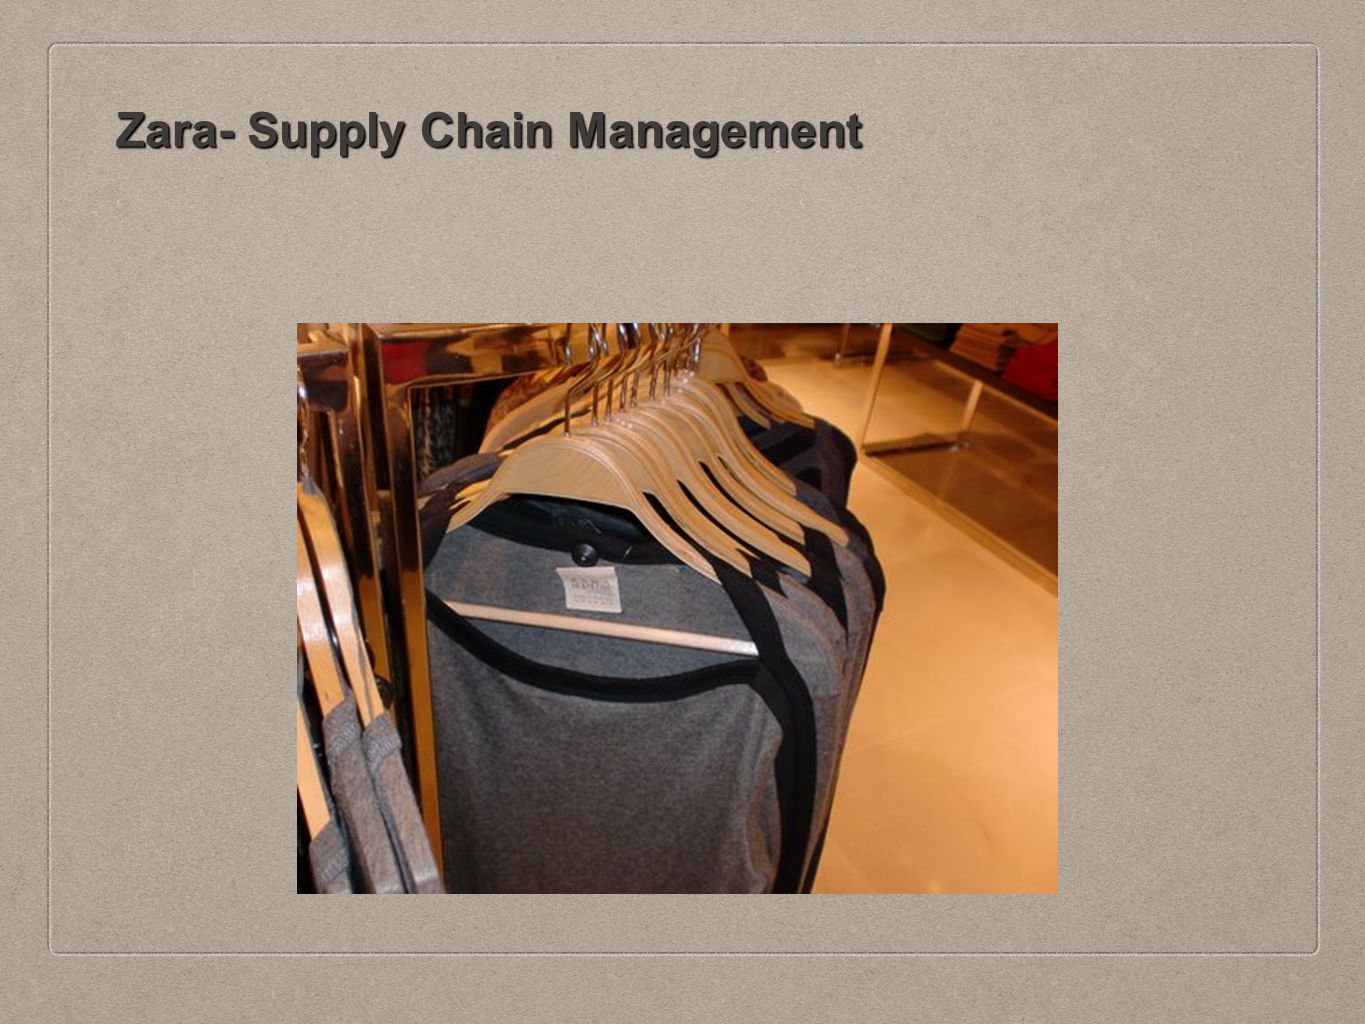 Zara supply chain management case study solution